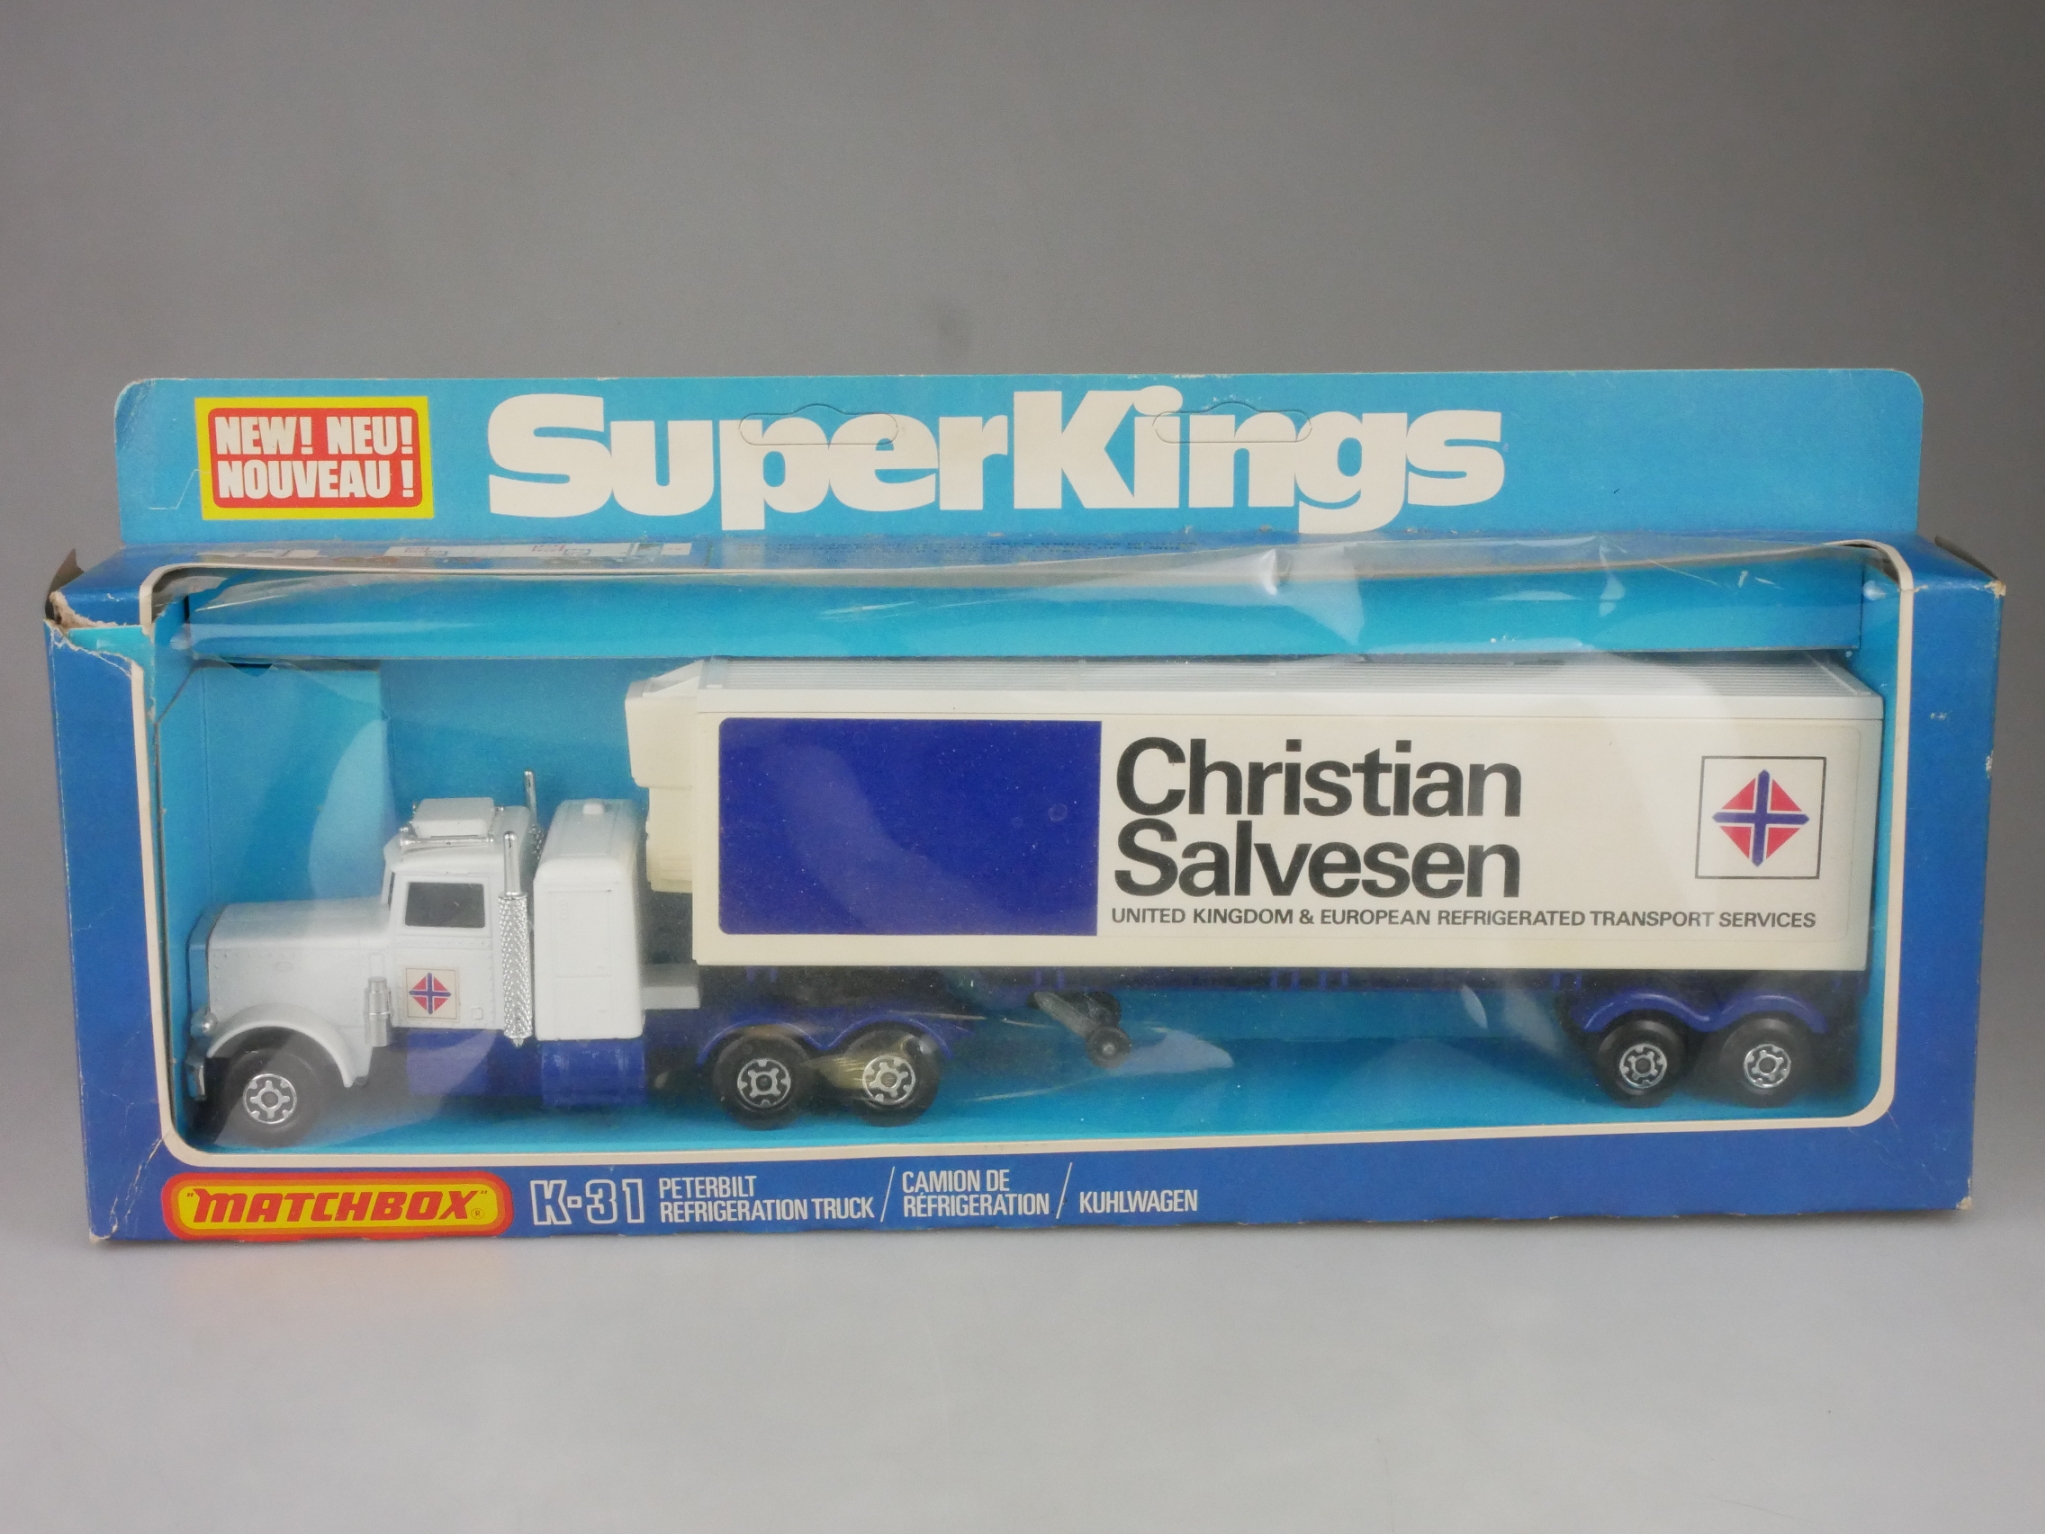 K-031B Peterbilt Refrigerator Truck CHRISTIAN SALVESEN - 72796